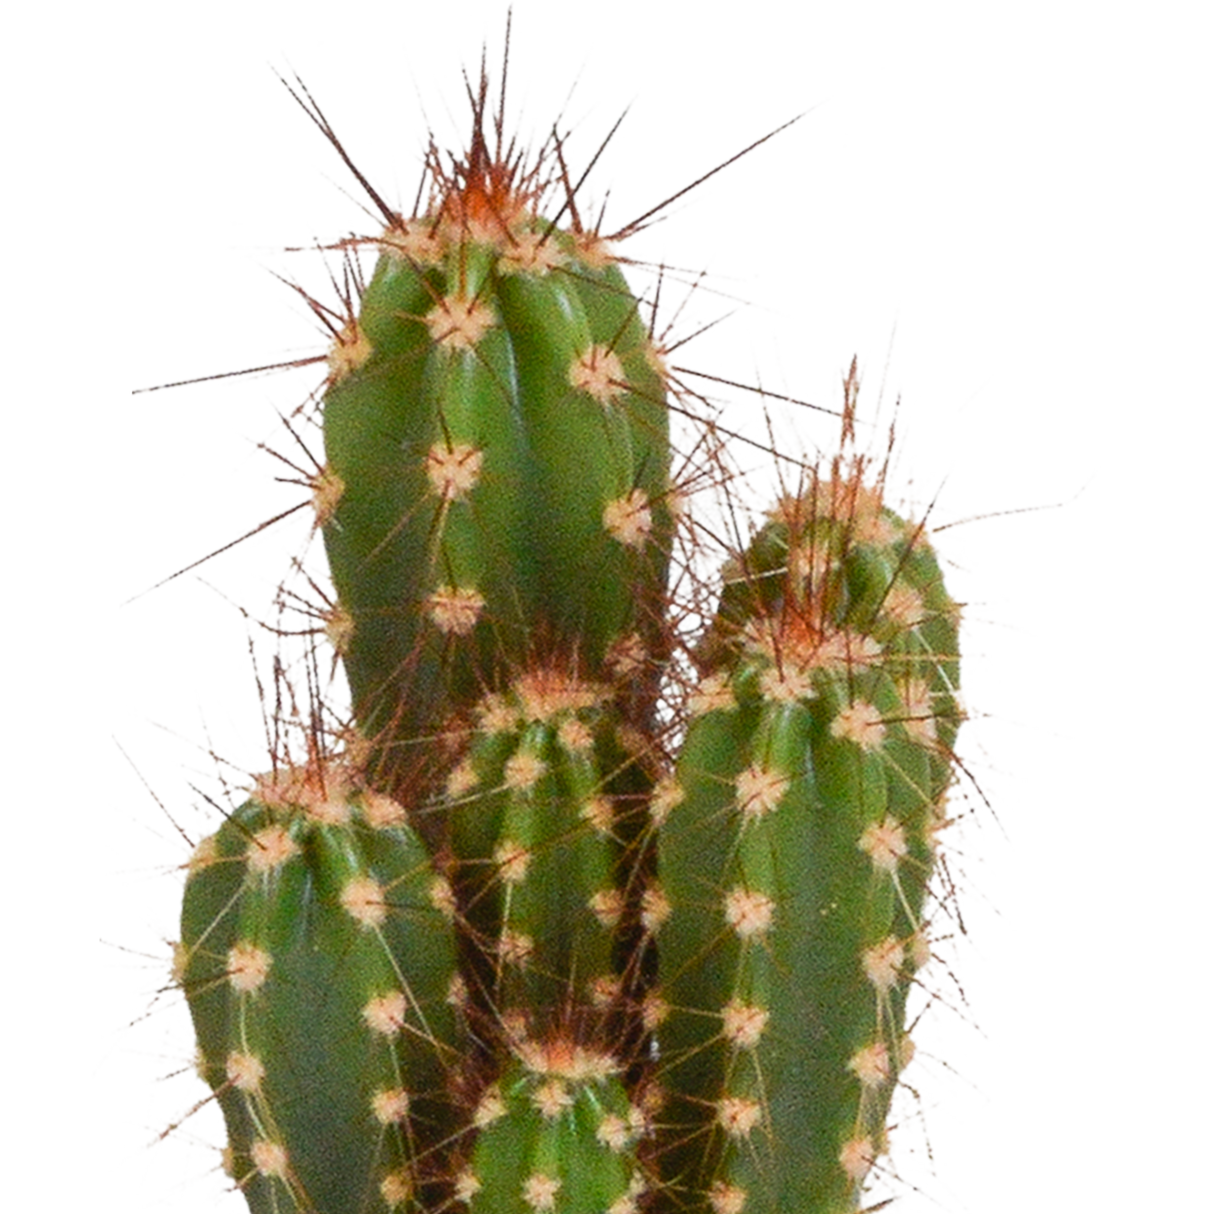 Caja de cactus y sus maceteros blancos - Juego de 5 plantas, h40cm